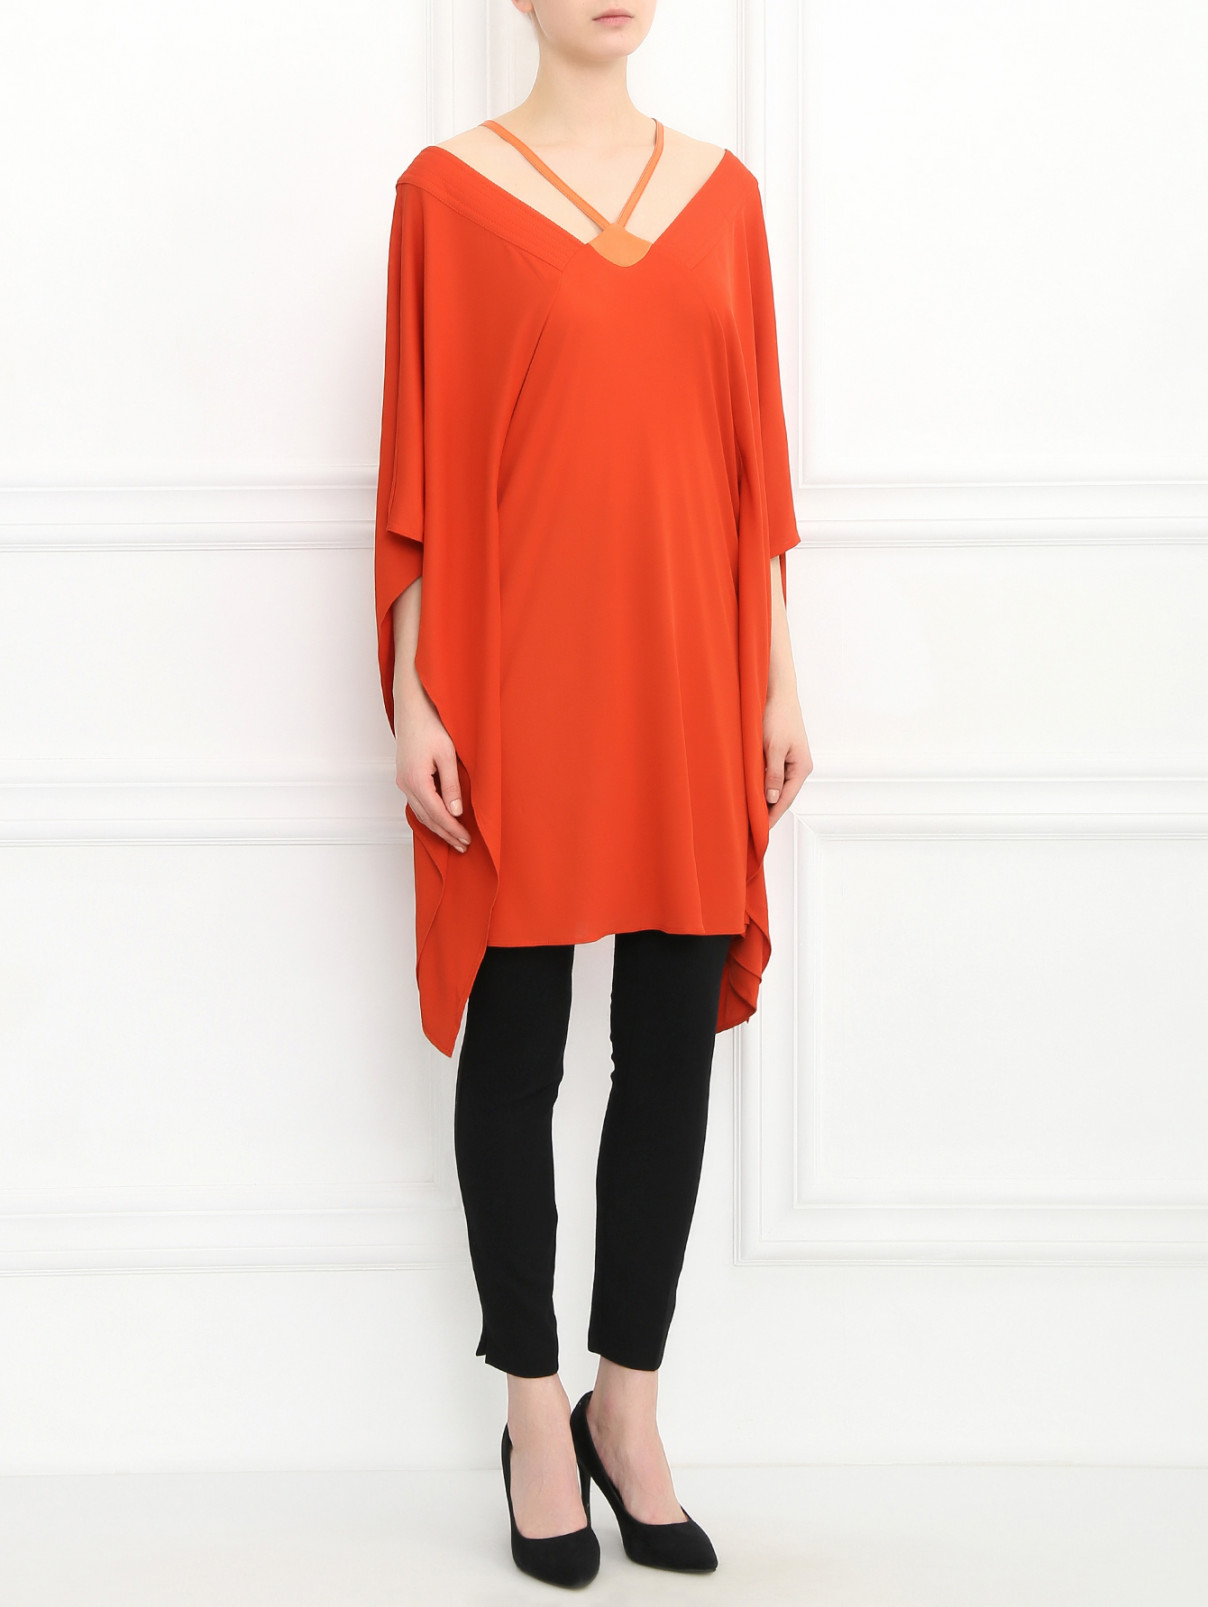 Удлиненная блуза Barbara Bui  –  Модель Общий вид  – Цвет:  Оранжевый